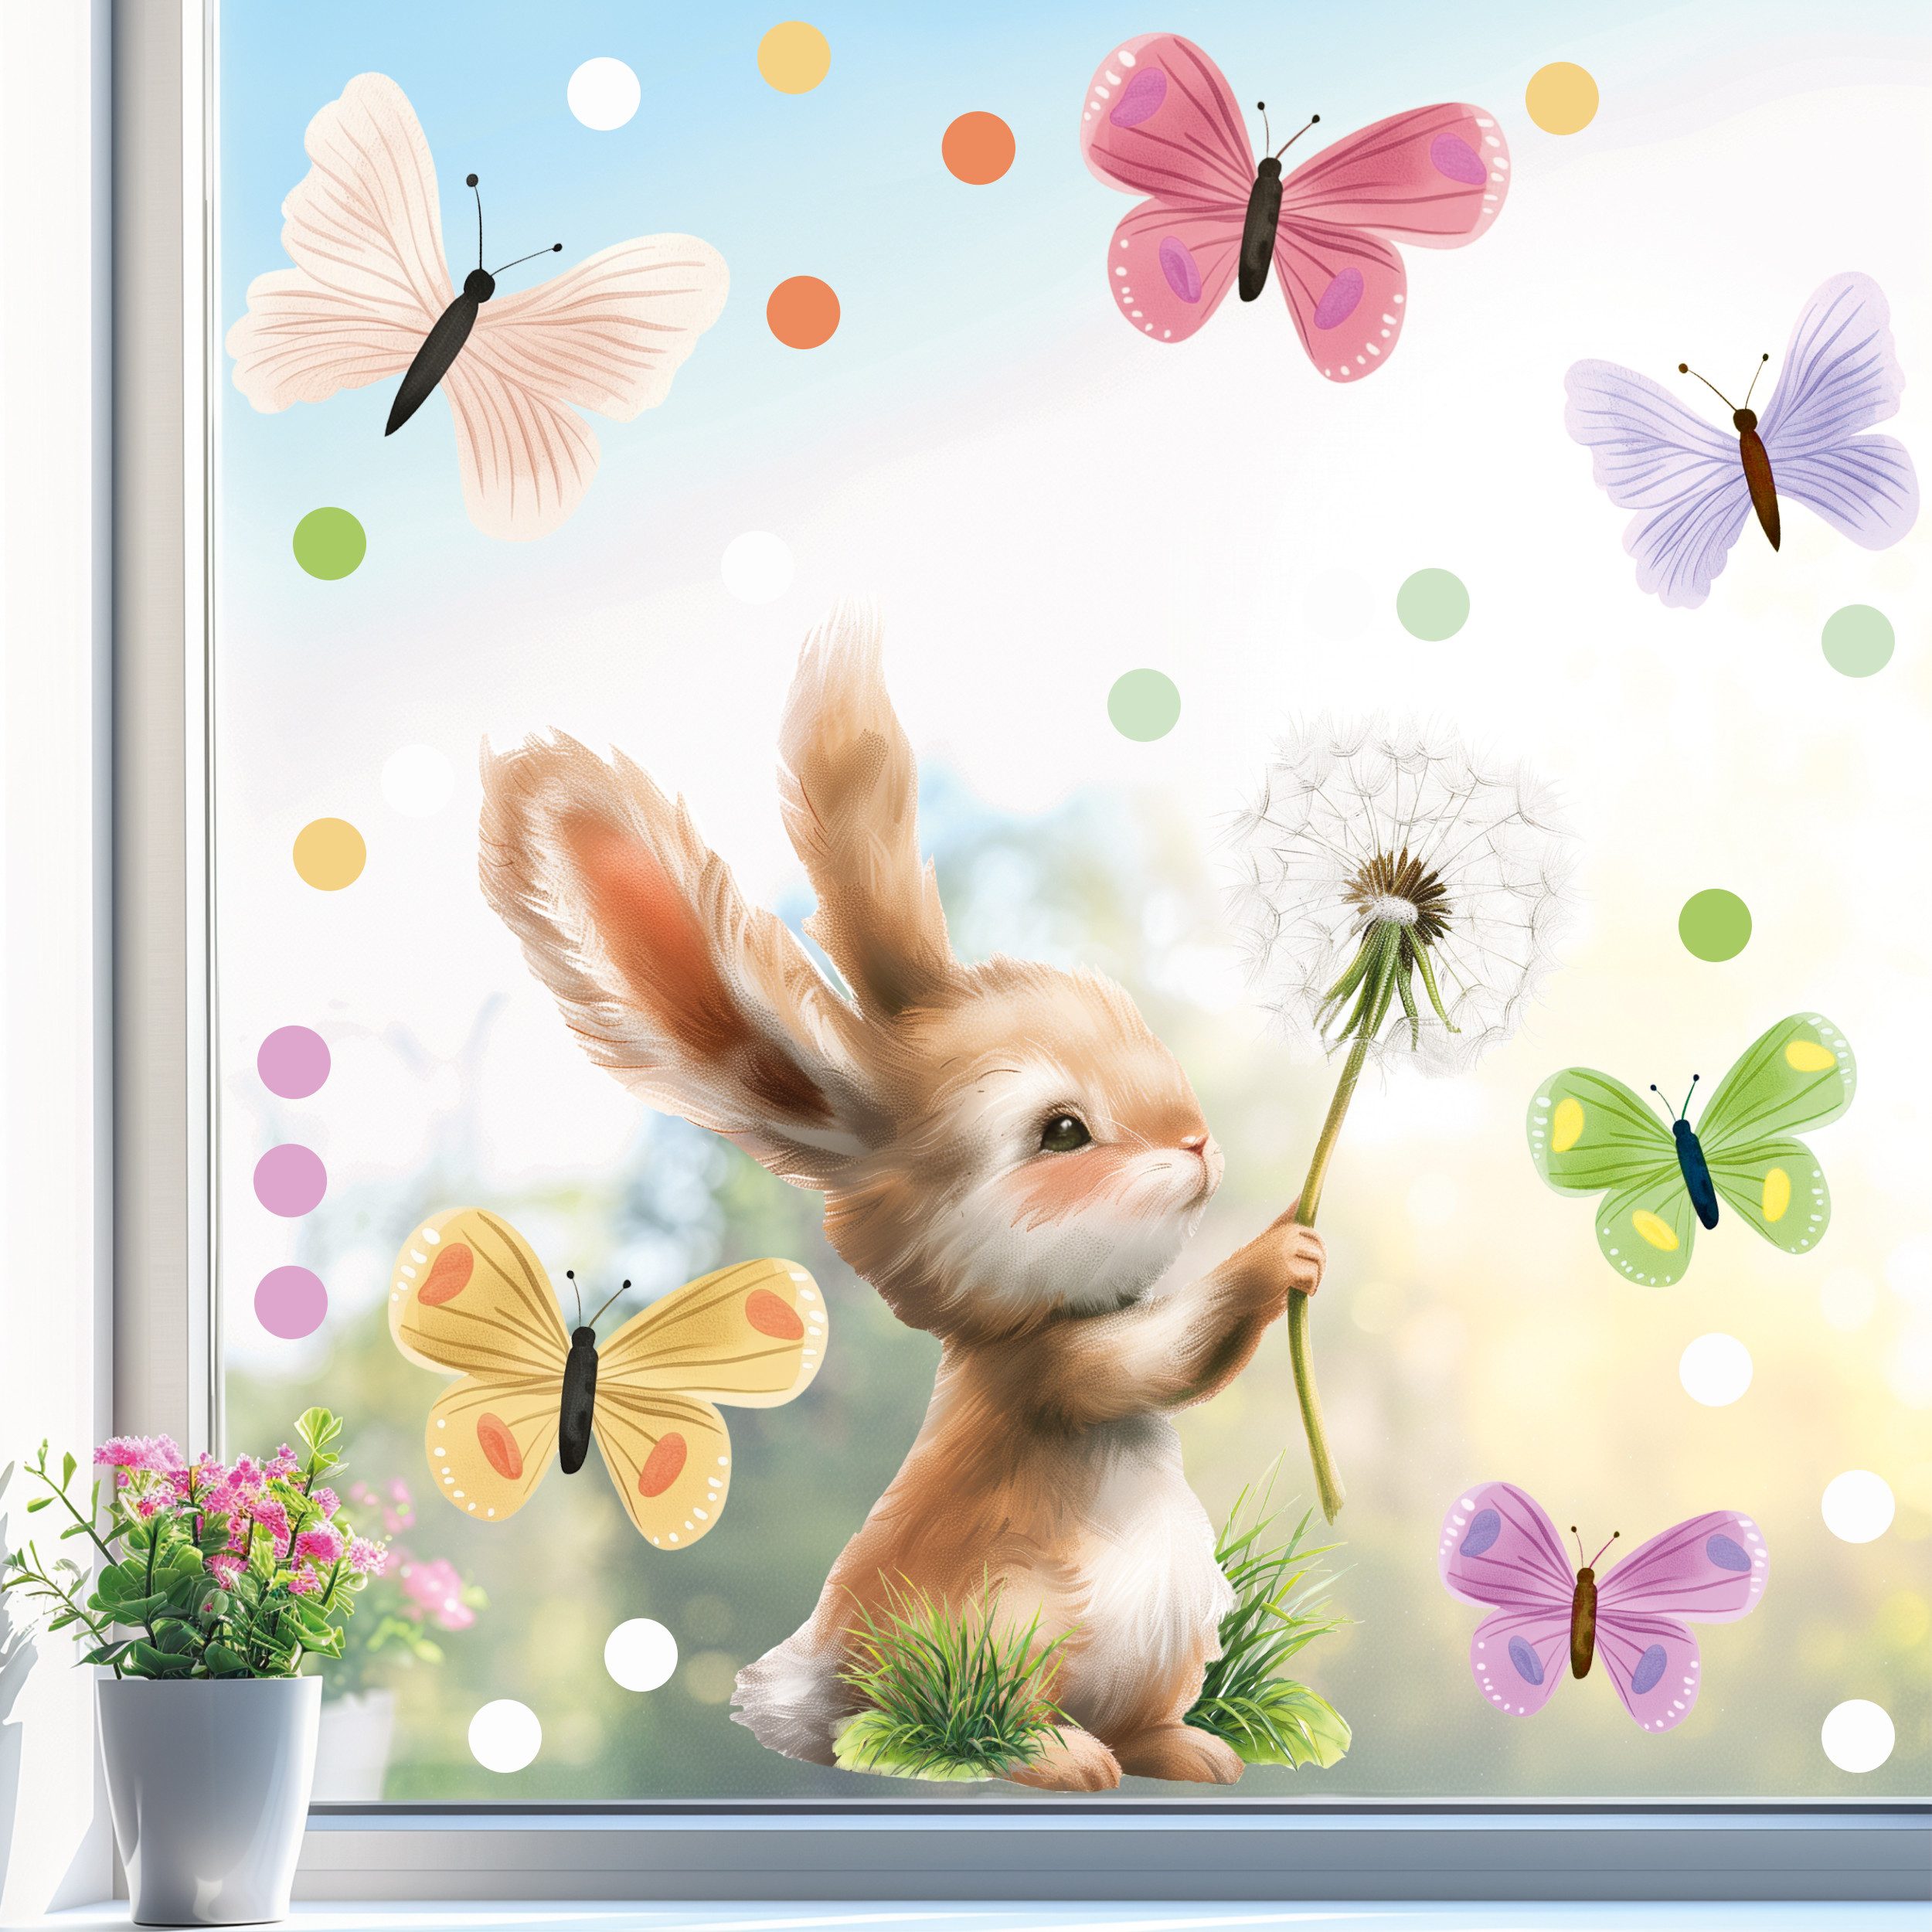 Sunnywall Fensterdekoration wiederverwendbare Картини вікна Hase Pusteblume Schmetterlinge, wiederverwendbar, statisch haftend, beidseitiger Druck, nachhaltig